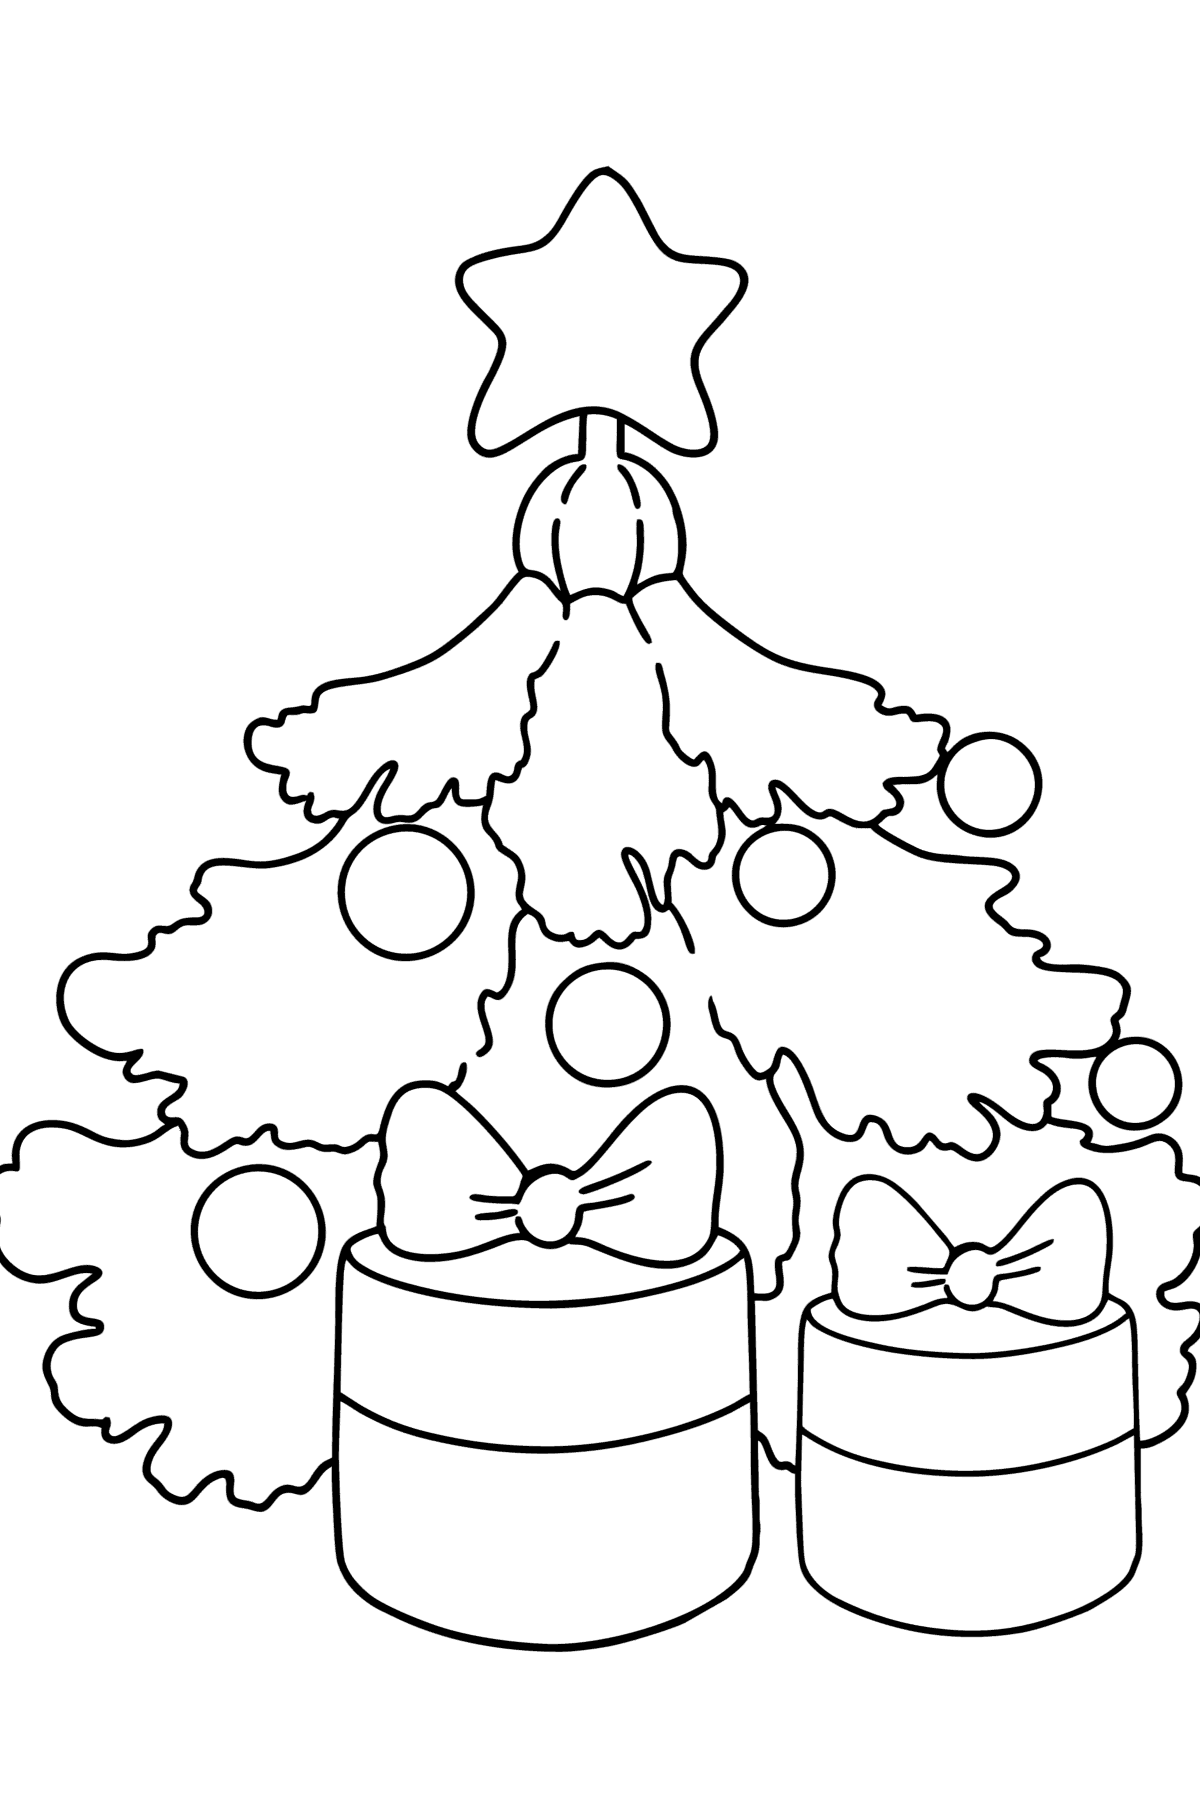 Desenho para colorir de Árvore de Natal e Presentes - Imagens para Colorir para Crianças